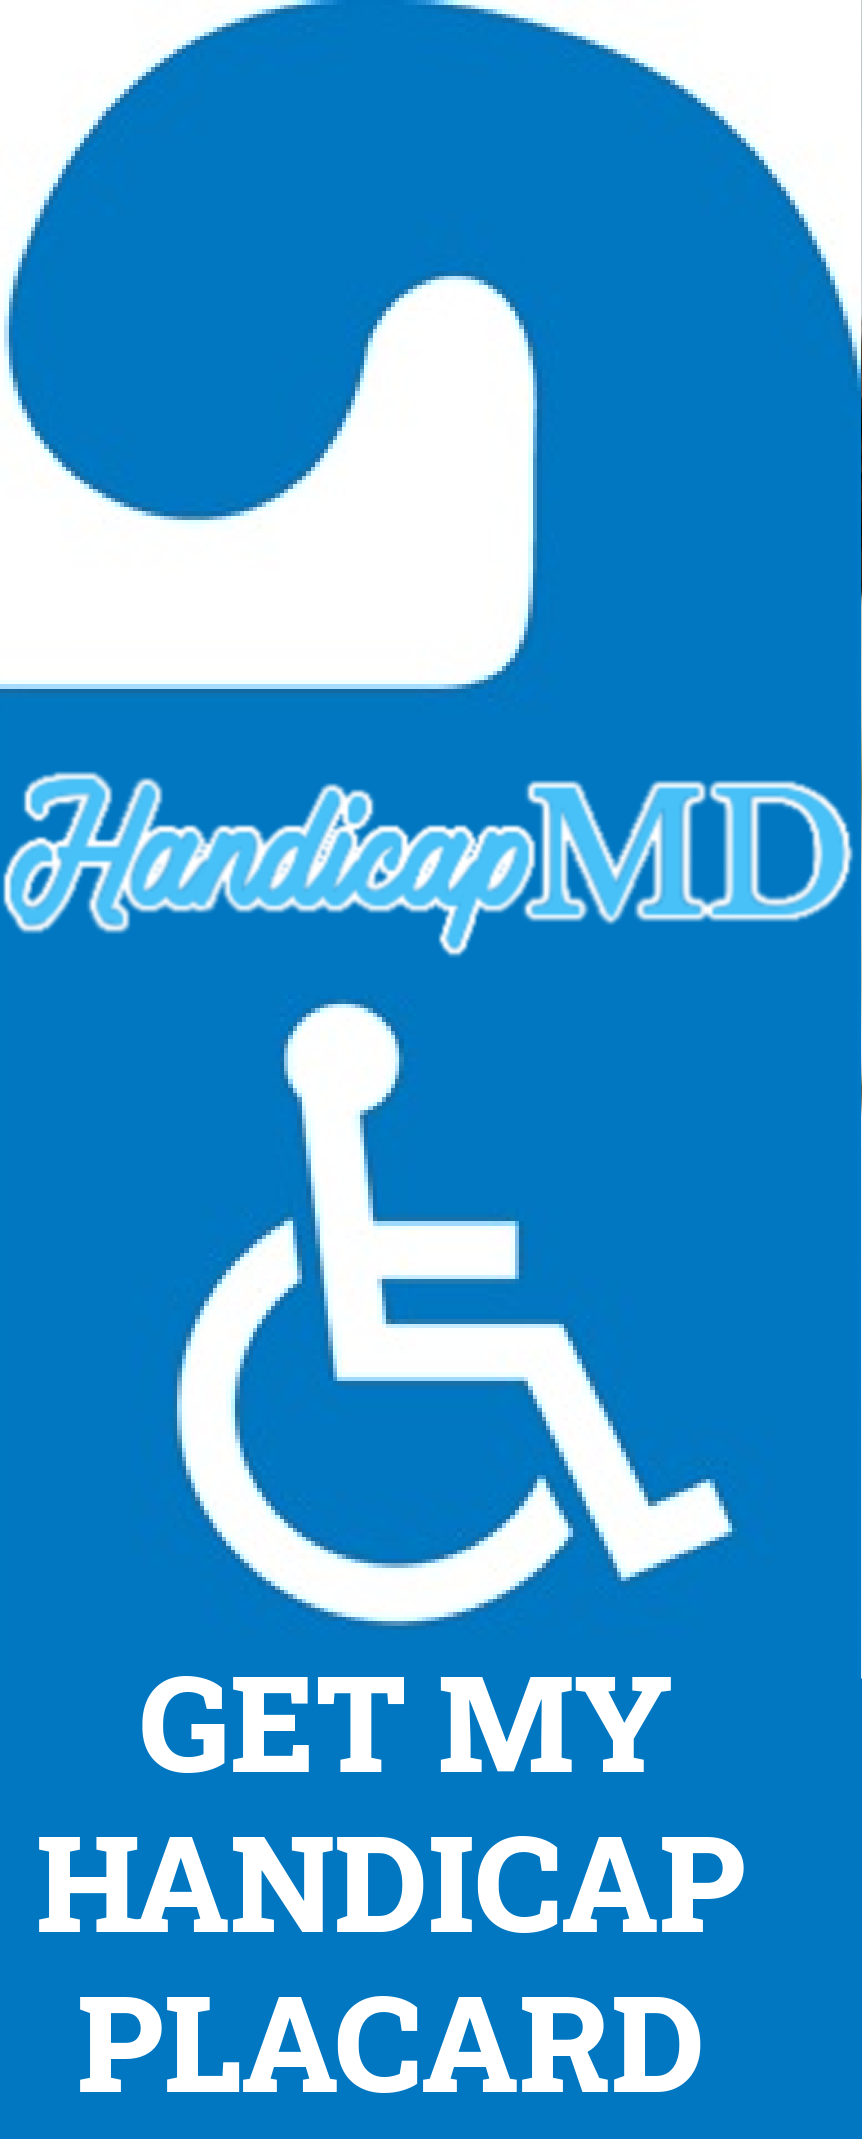 Online Guide to Handicap Parking in Colorado